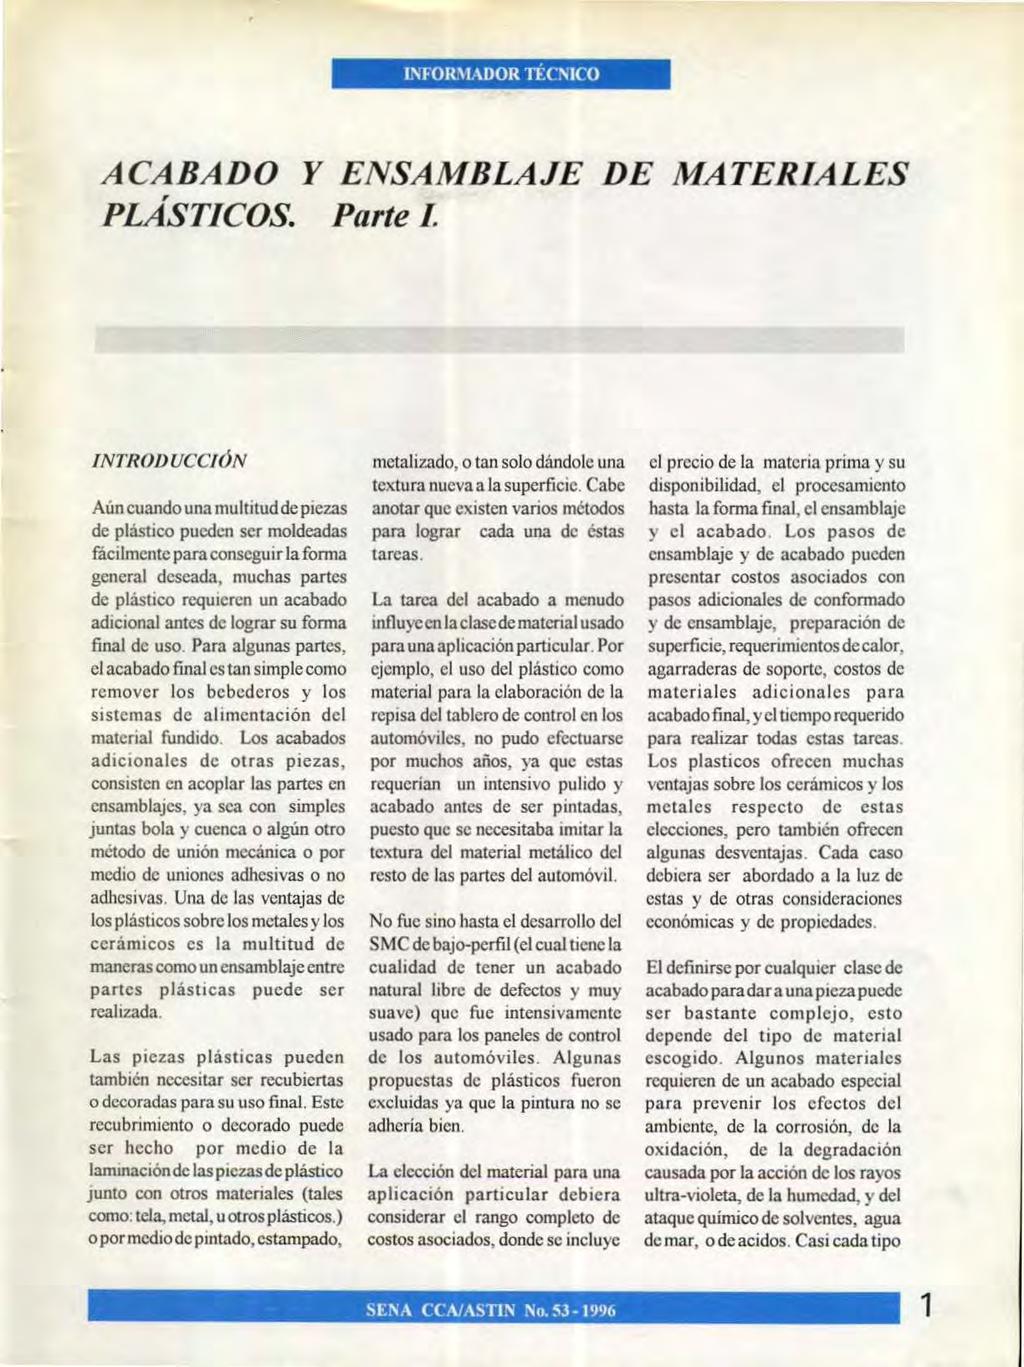 ACABADO Y ENSAMBLAJE DE MATERIALES PLASTICOS. Parte I.